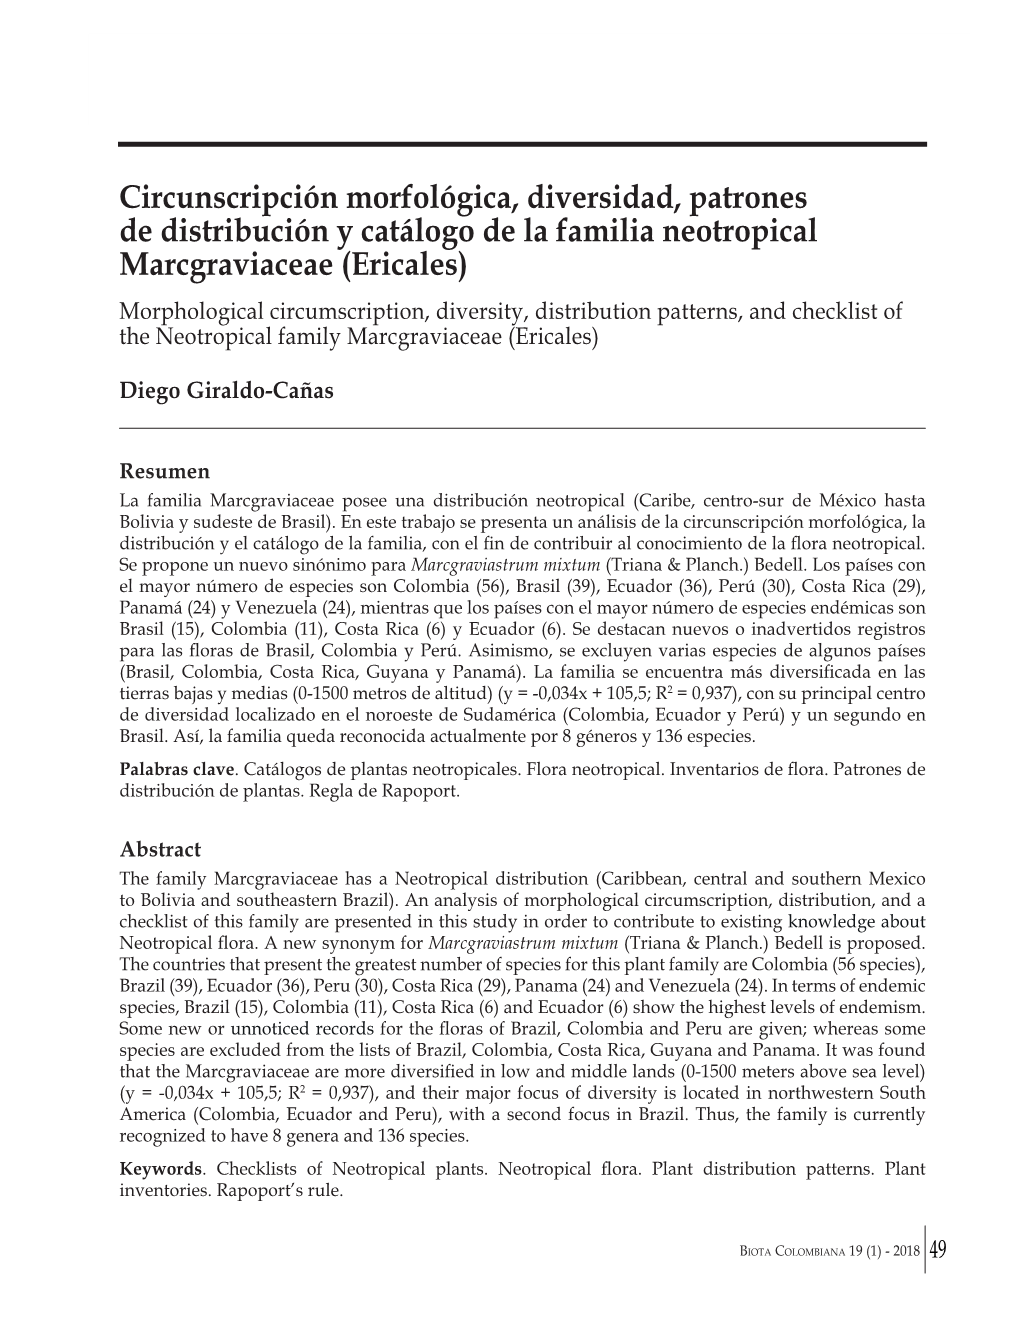 Circunscripción Morfológica, Diversidad, Patrones De Distribución Y Catálogo De La Familia Neotropical Marcgraviaceae (Ericales)